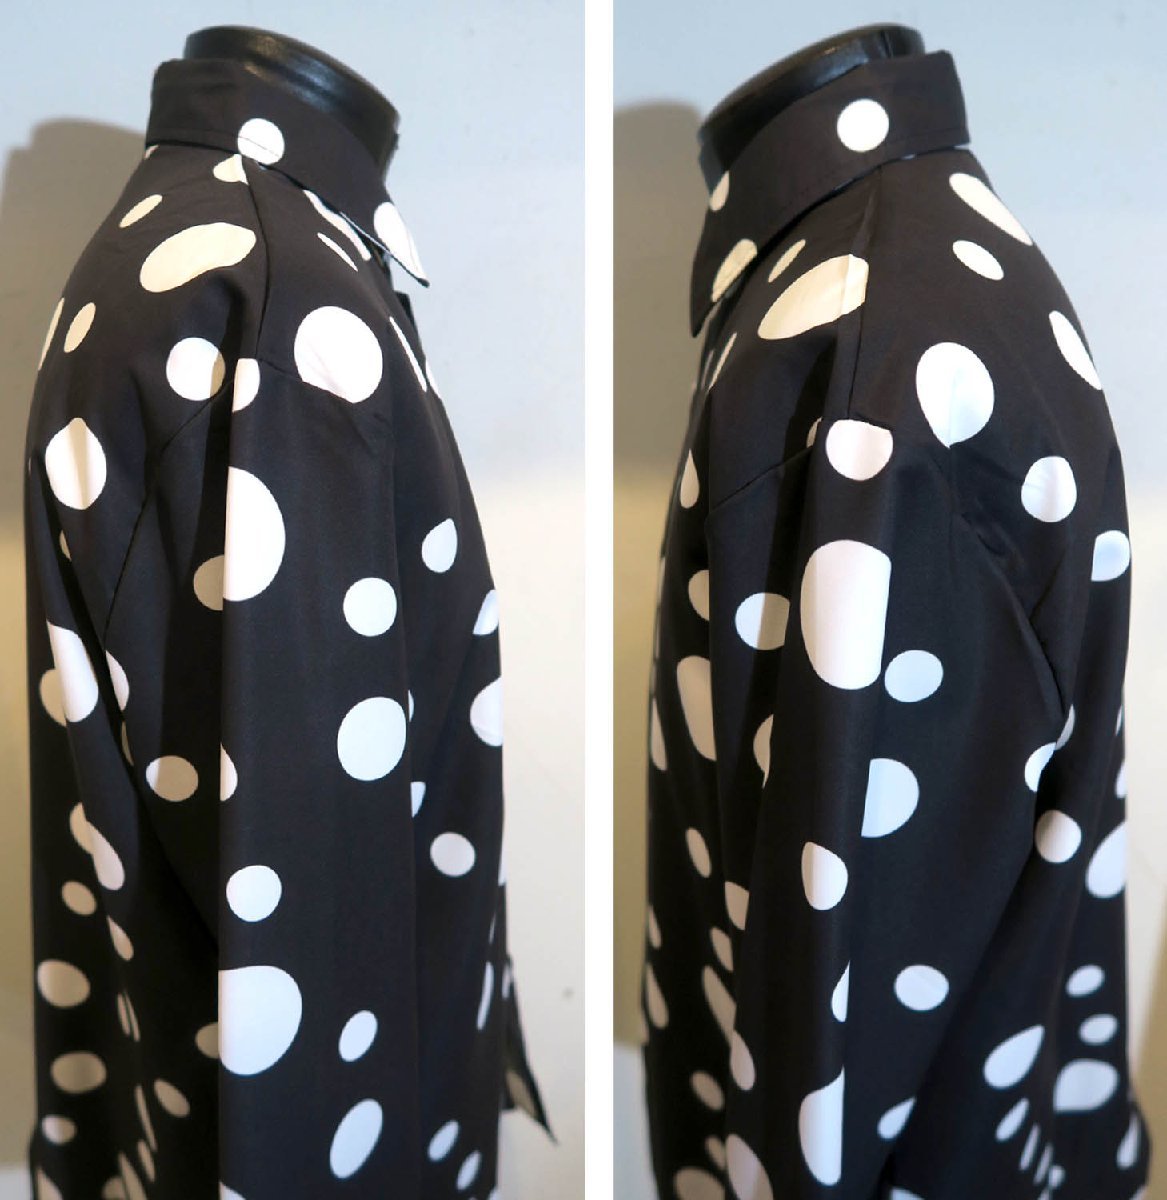 新品 XLサイズ ピエロの様な水玉シャツ ドット柄シャツ 1187 黒×白 ヴィジュアル系 柄シャツ 可愛いシャツ パンク ロック ヒップホップの画像4